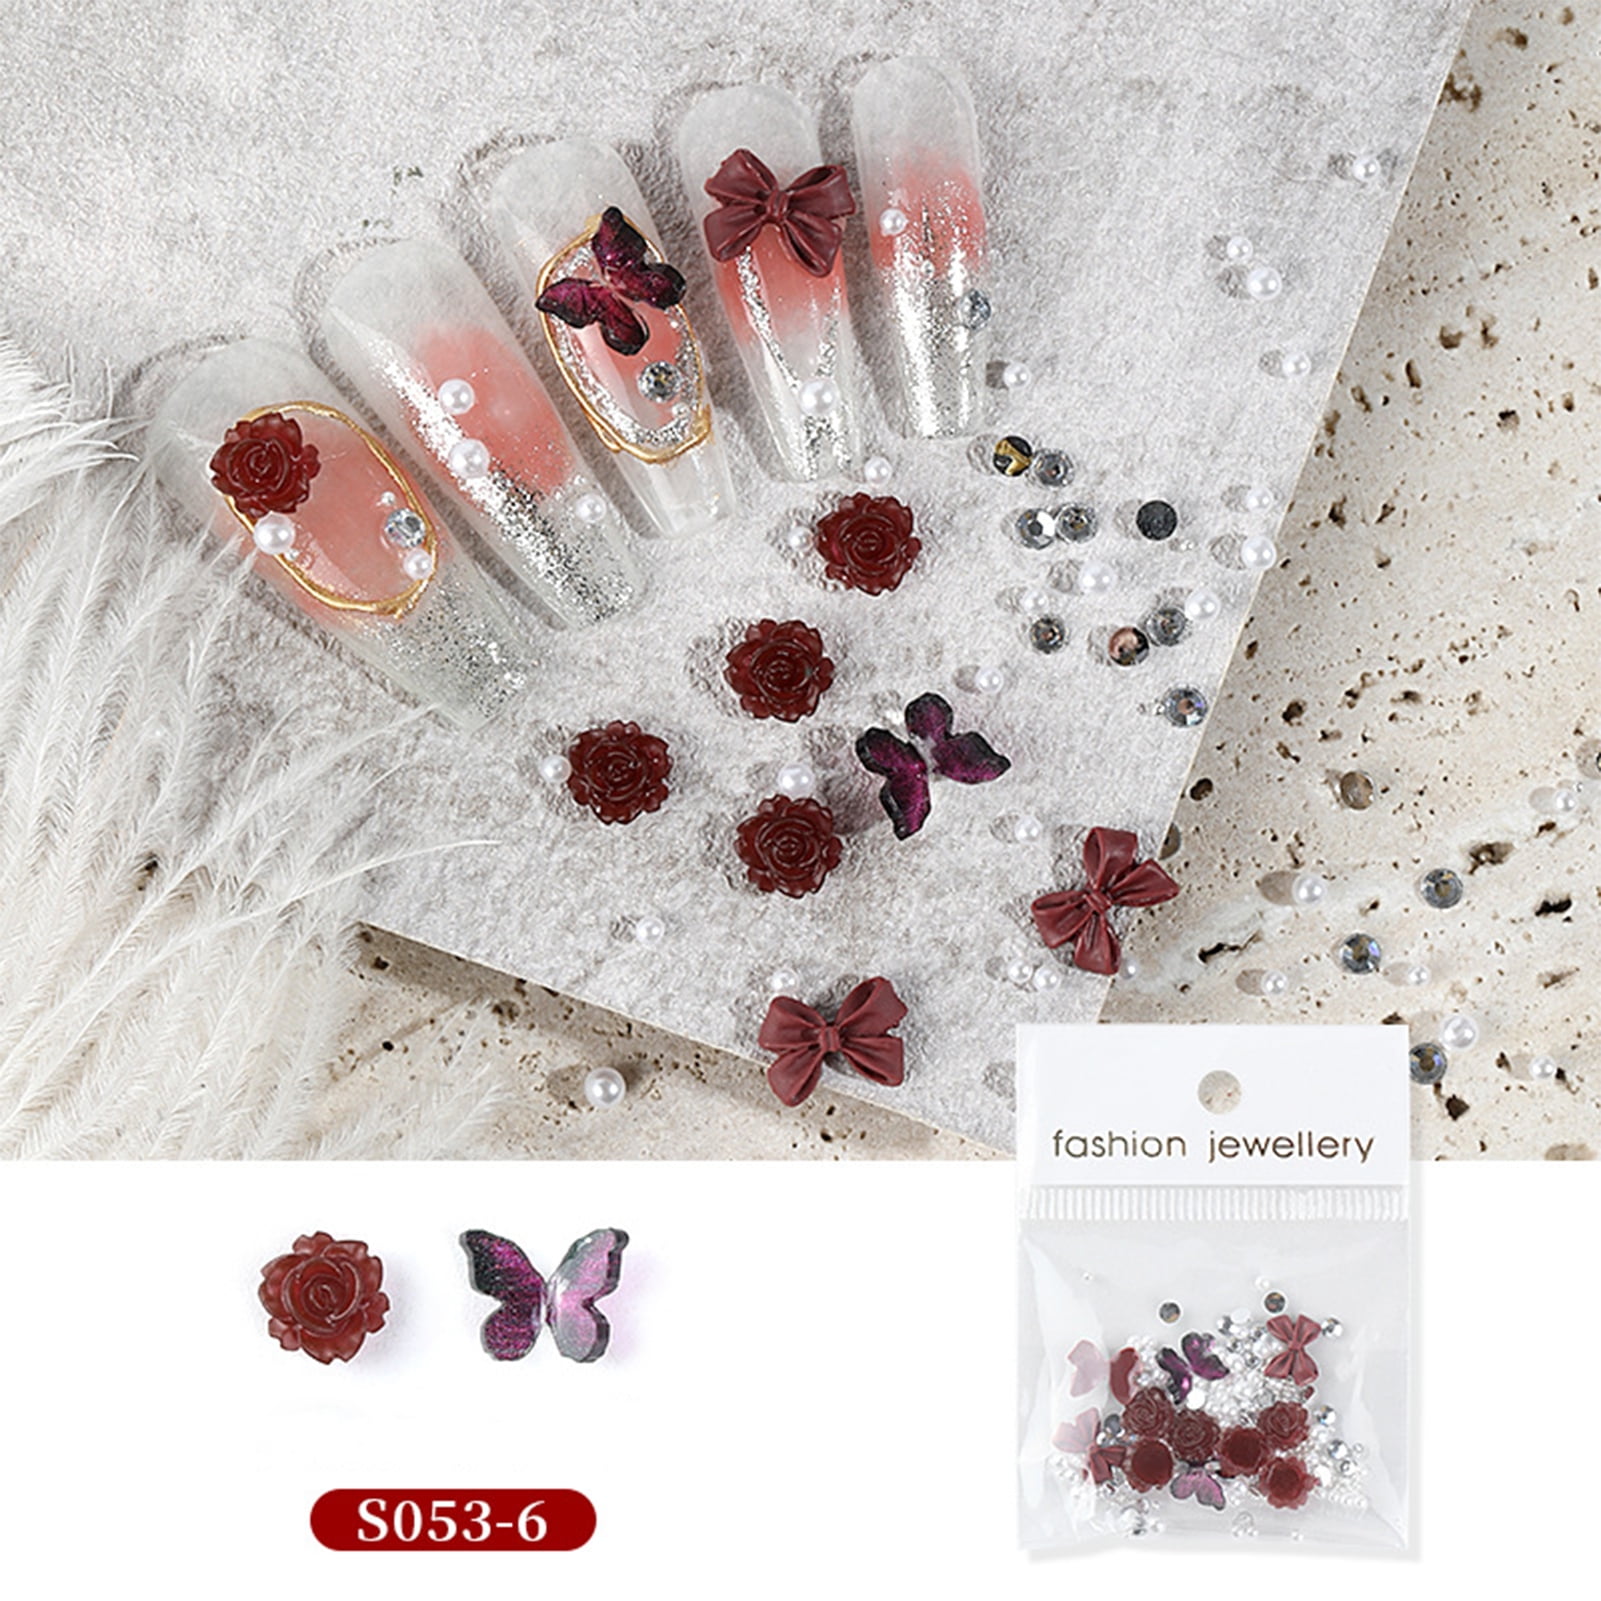 Coralbeau Nail Art Kit with Rhinestones for Nails - Nail Polish Gift Set for Teens - Nail Accessories: 4 Nail Polish Nail Decor Tools Nail